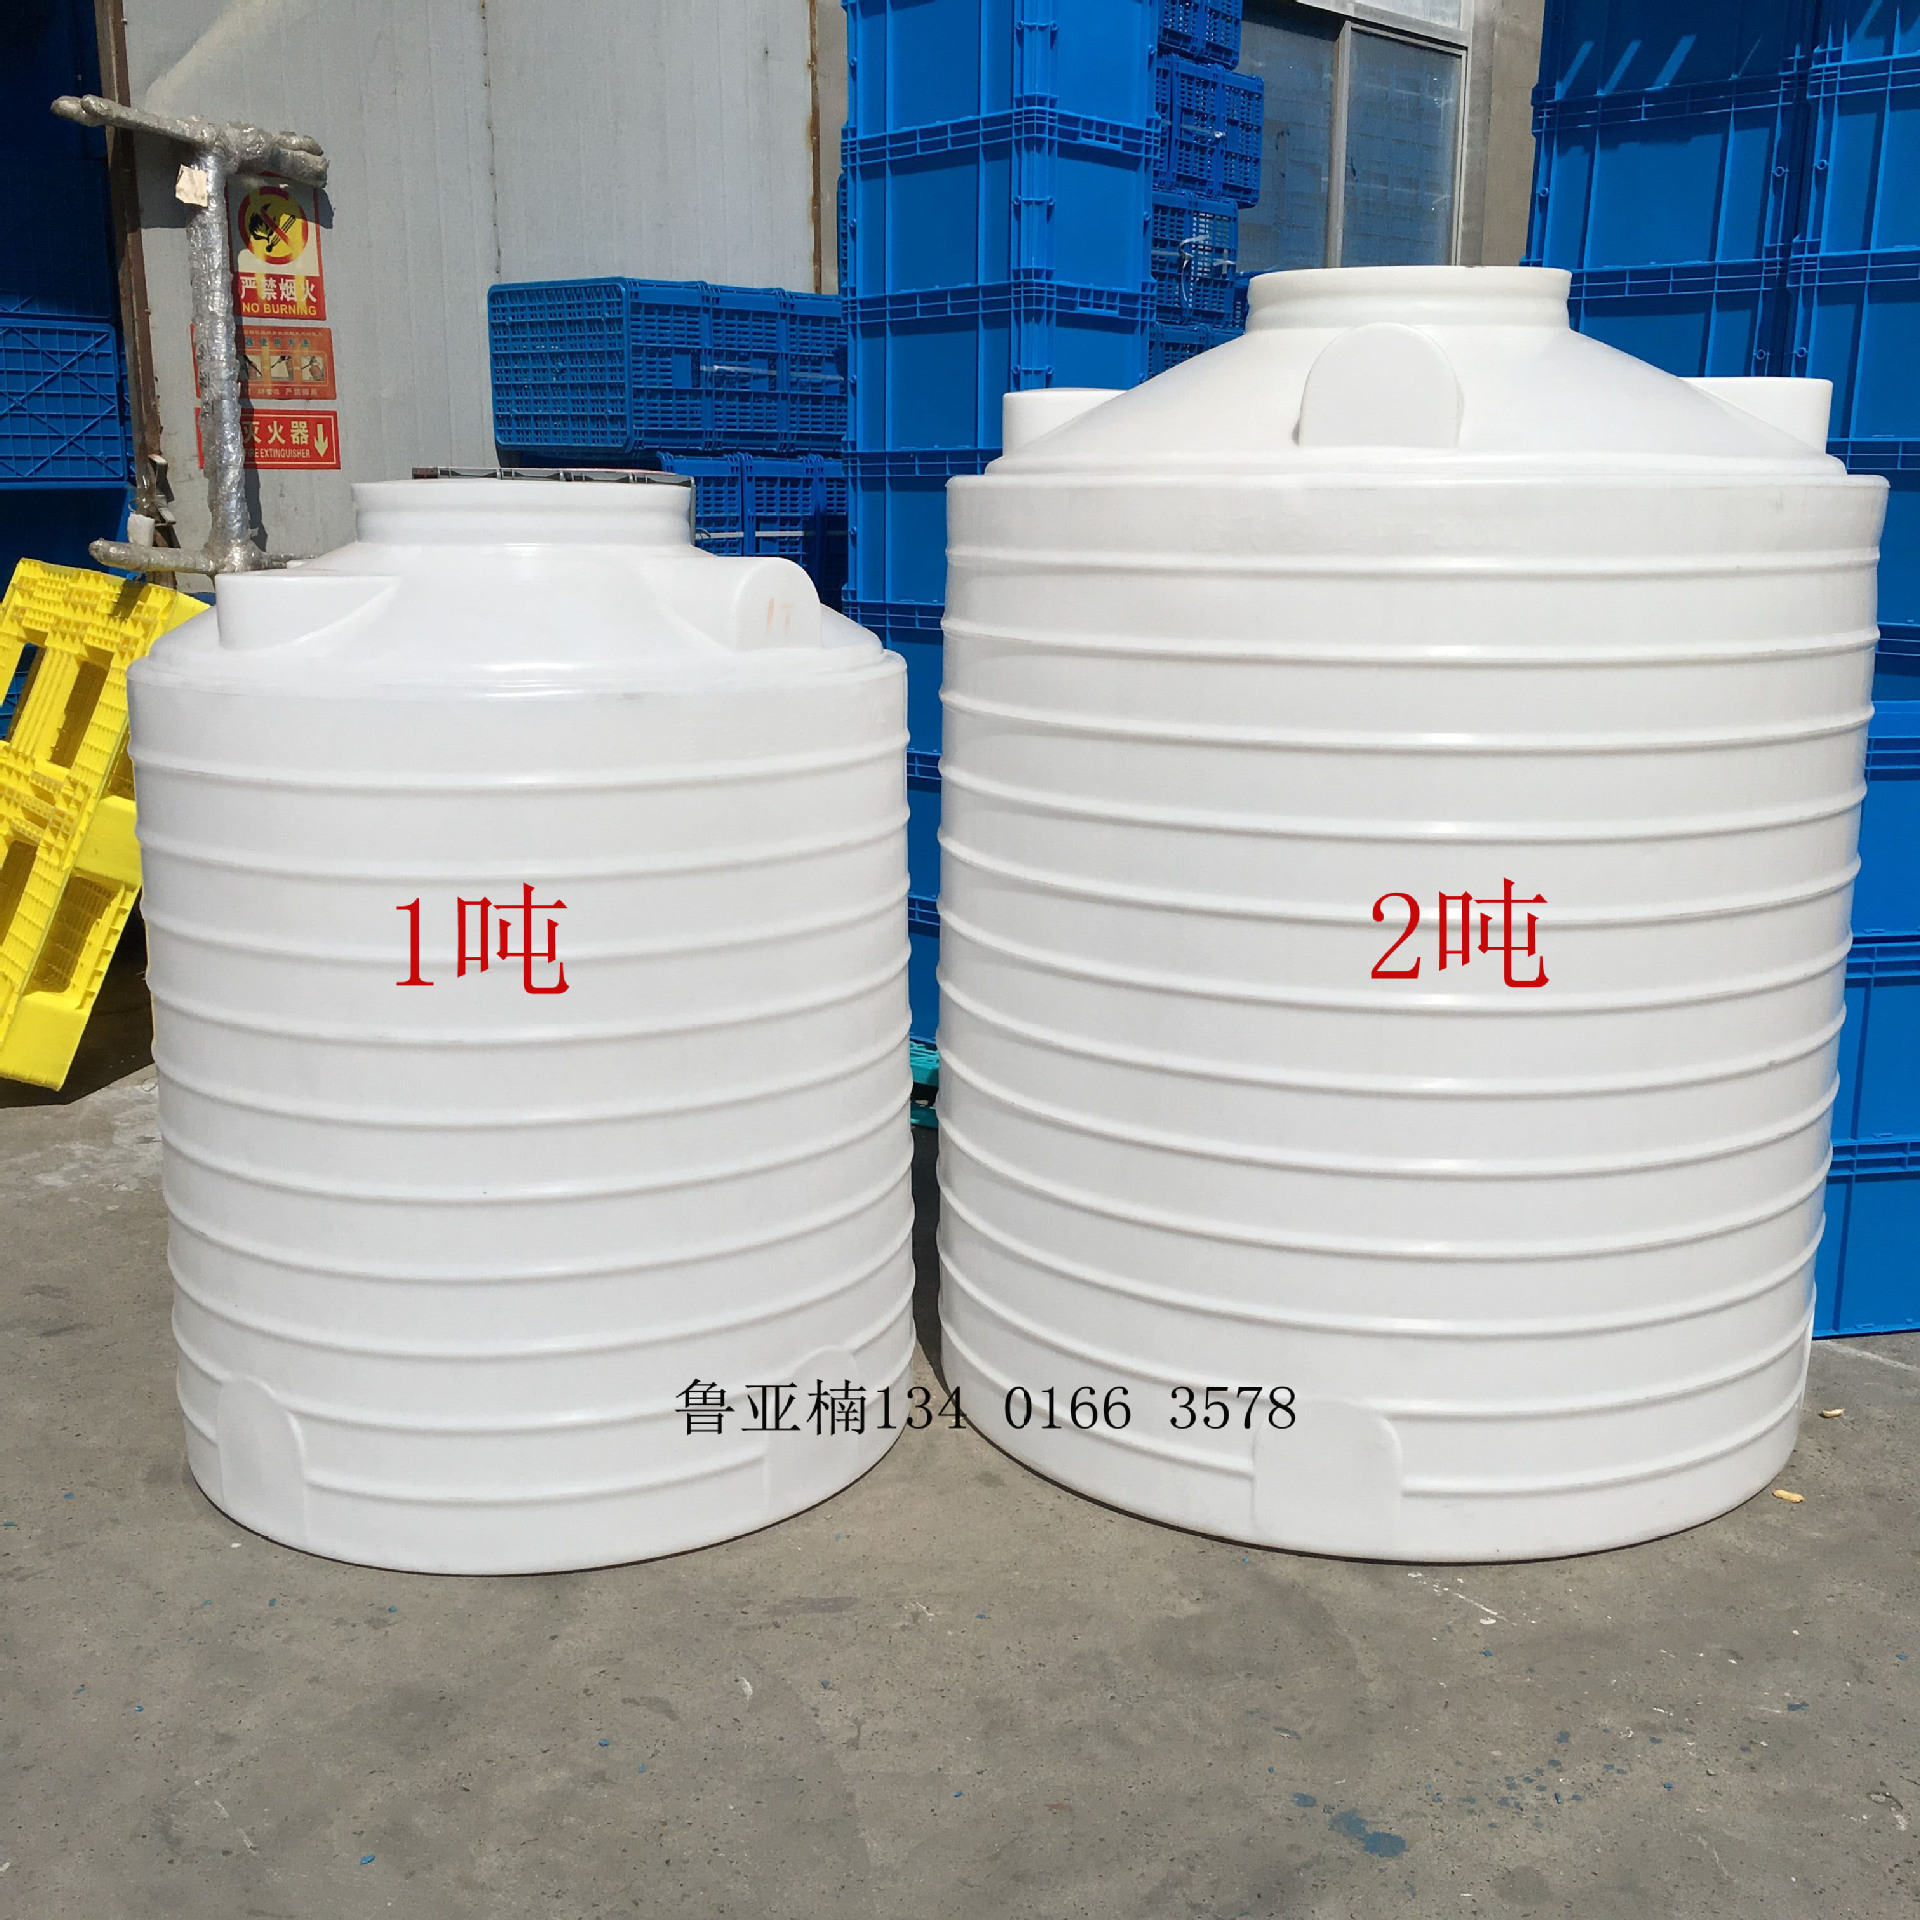 江苏1吨塑料水塔厂家 水塔图片 水塔价格表齐全 塑料水箱厂家直销